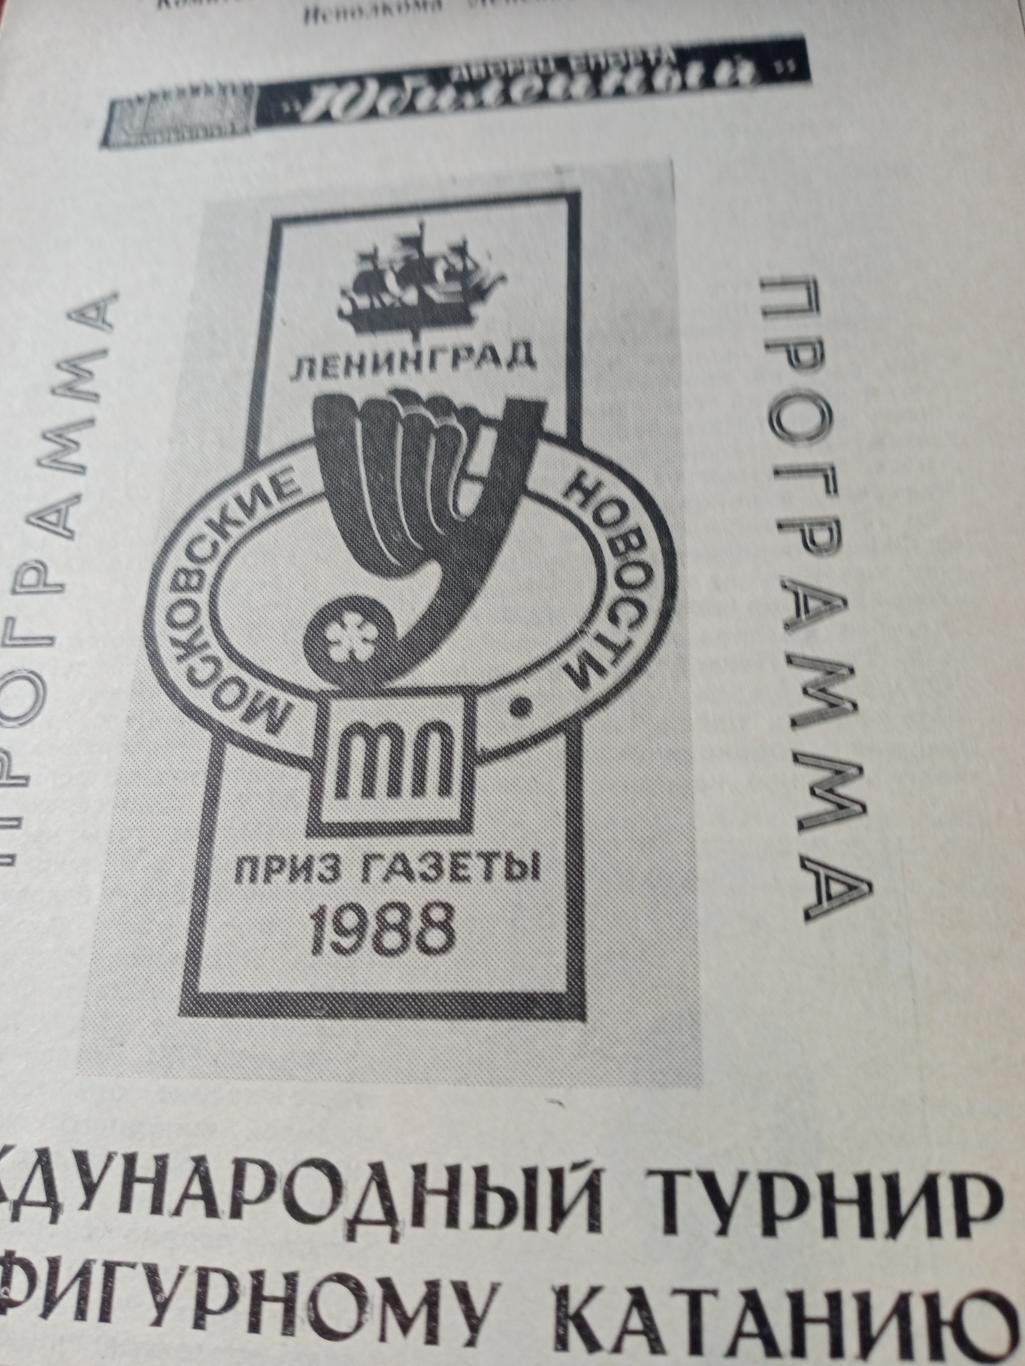 Турнир на приз газеты Московские новости. Ленинград, 1988 год